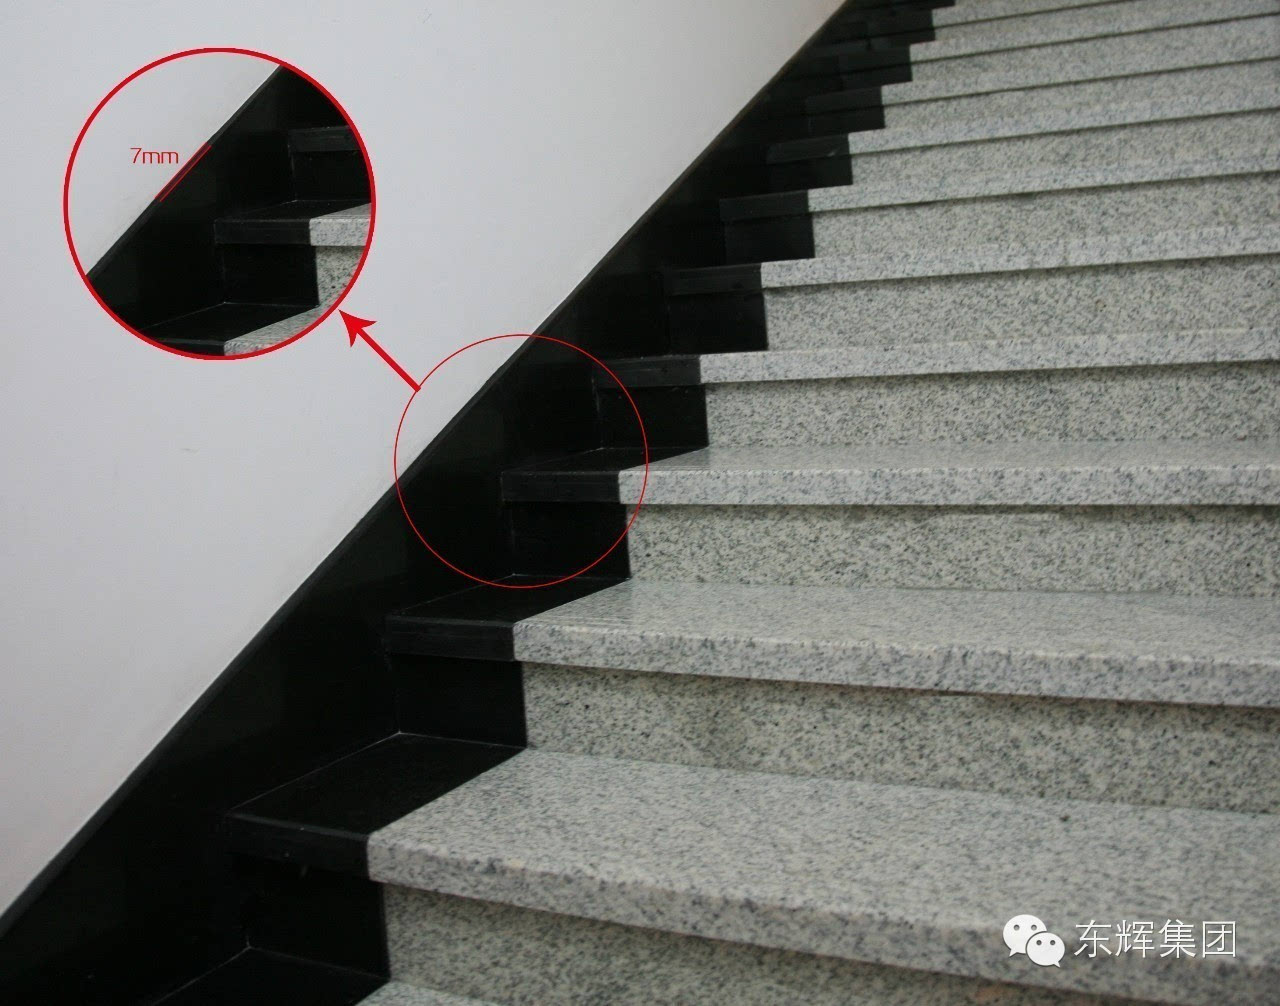 楼梯底板滴水线效果楼梯底板滴水线效果楼梯挡脚板安装效果柱脚石材套